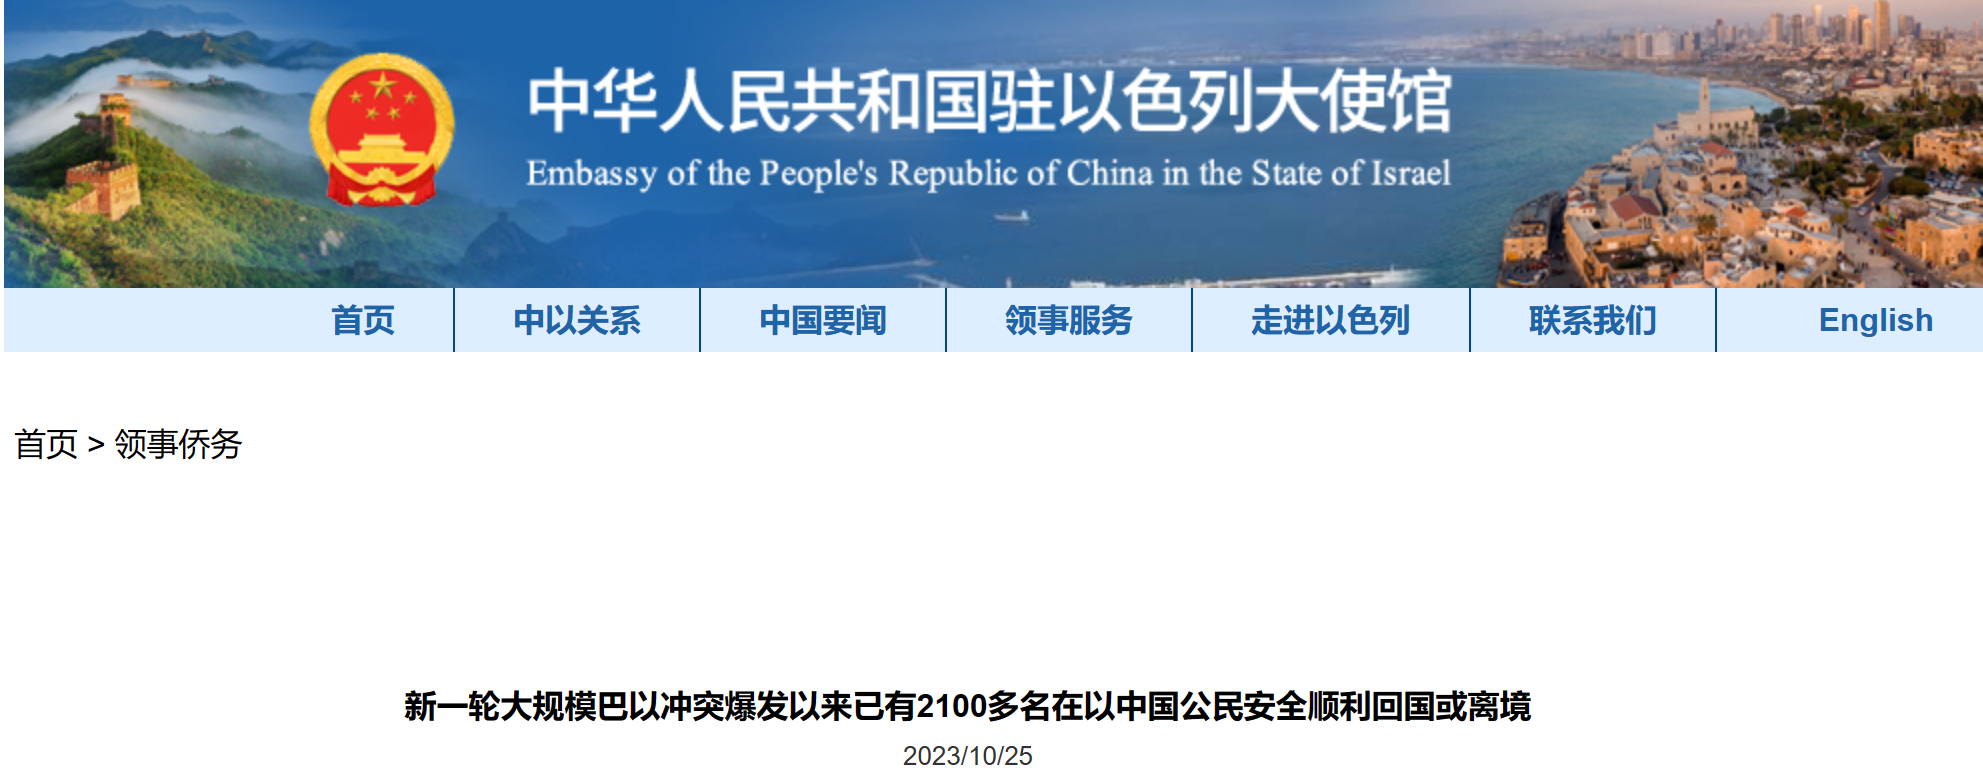 中国驻塞内加尔使馆提醒在塞中国公民提高安全防范意识